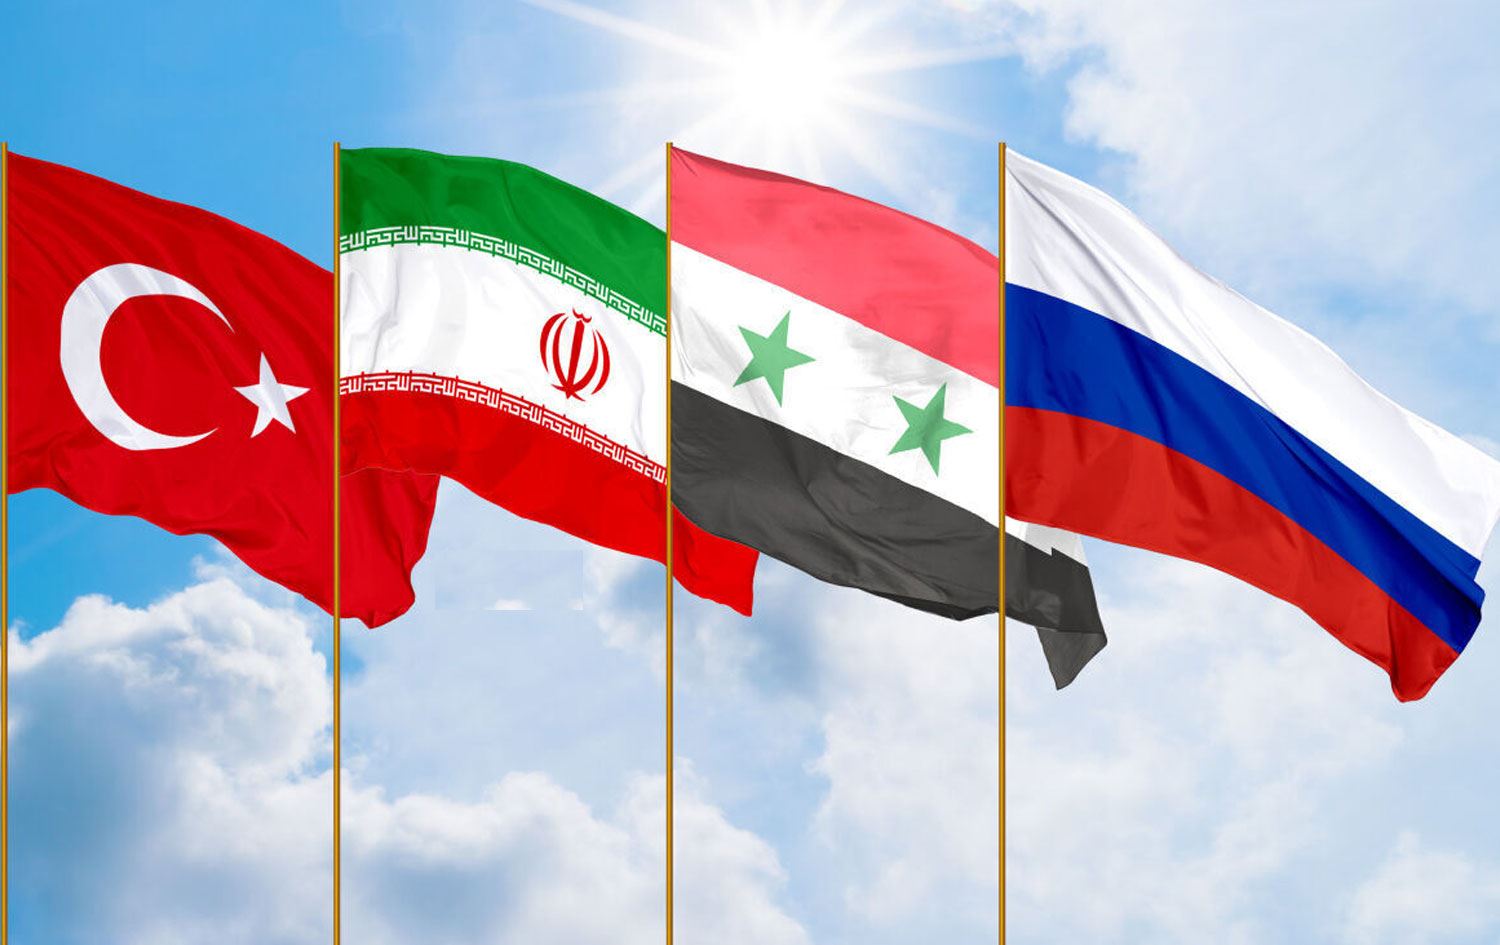  Suriye  konulu zirve  Astana da yapılacak